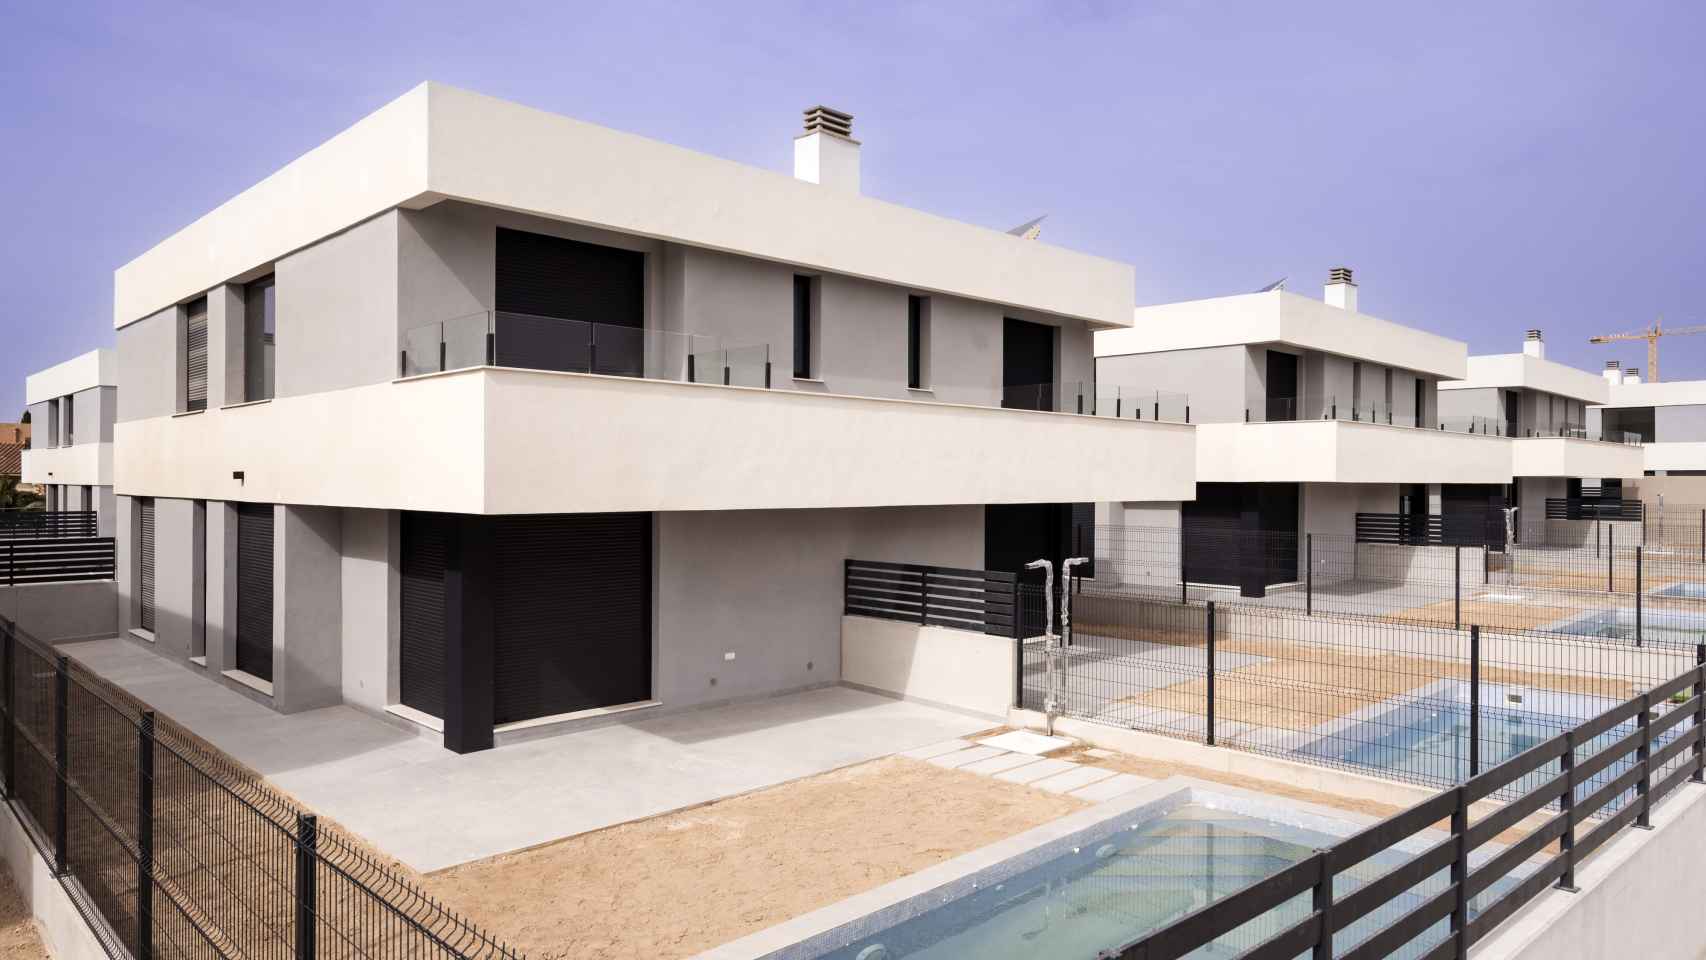 AEDAS Homes entrega tres promociones con 200 viviendas en Alicante